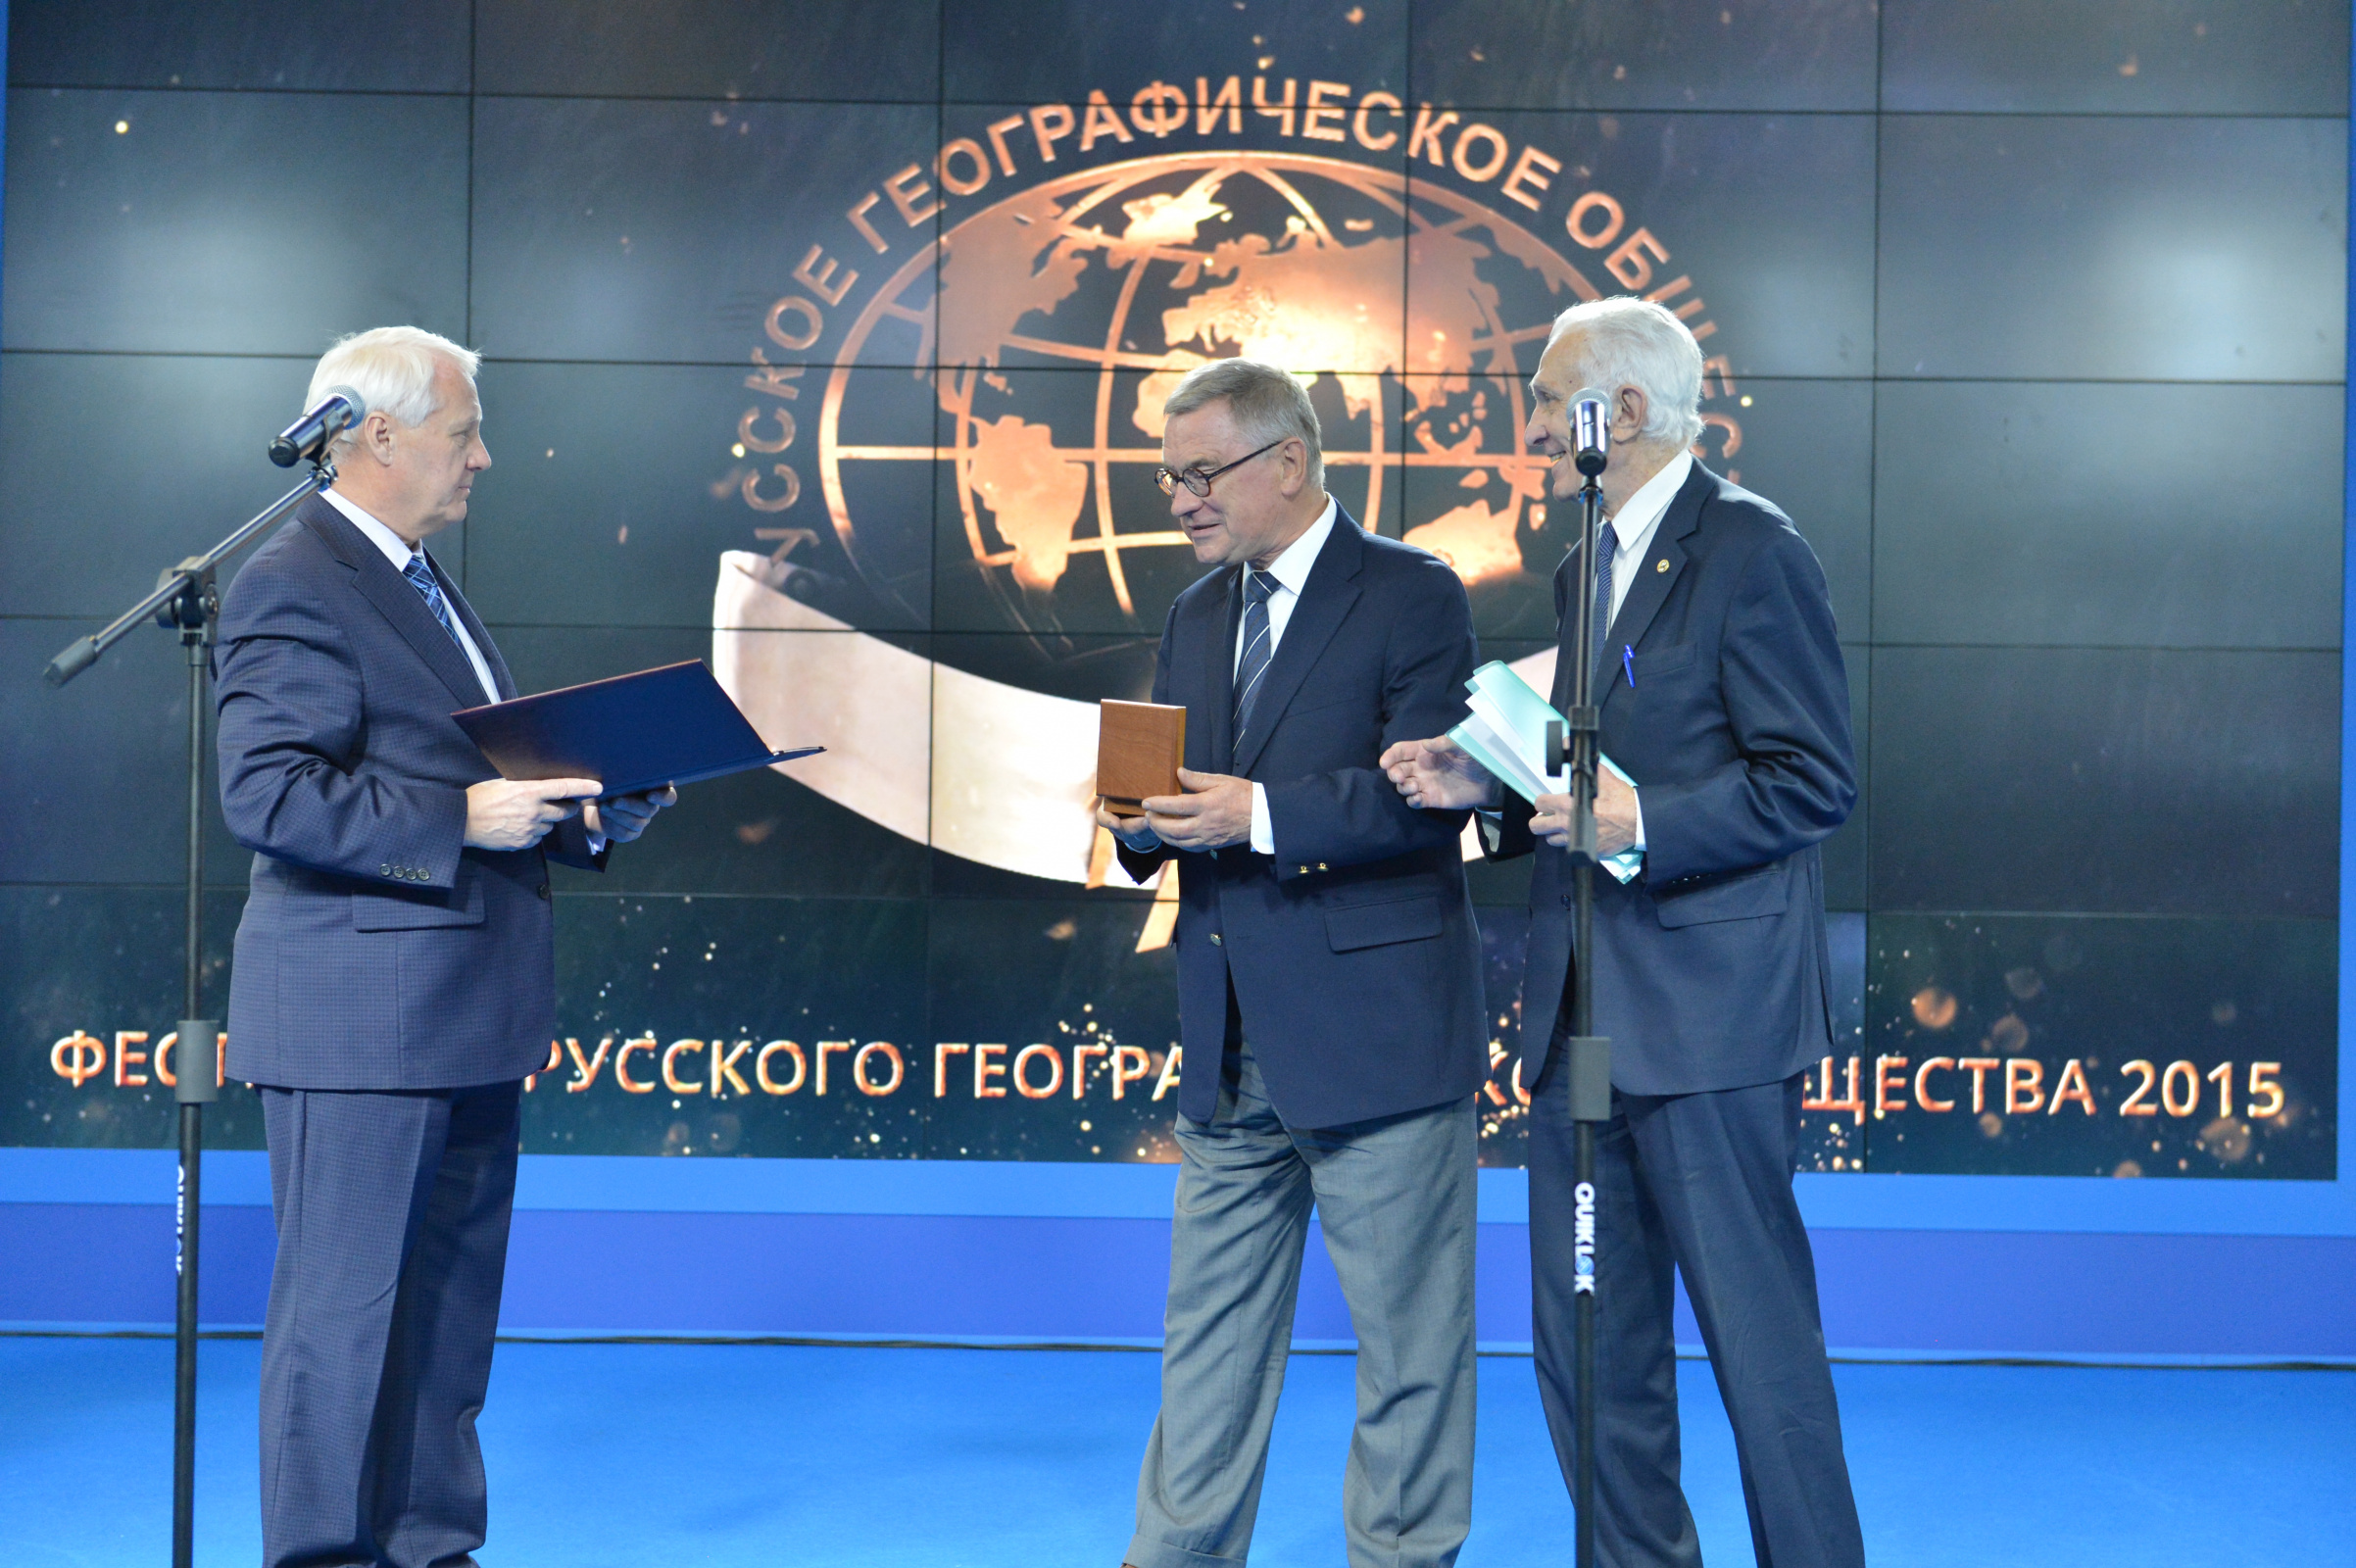 Слева направо: Первый Вице-президент РГО Н.С. Касимов, Г.Г. Матишов, Почётный Президент РГО В.М. Котляков